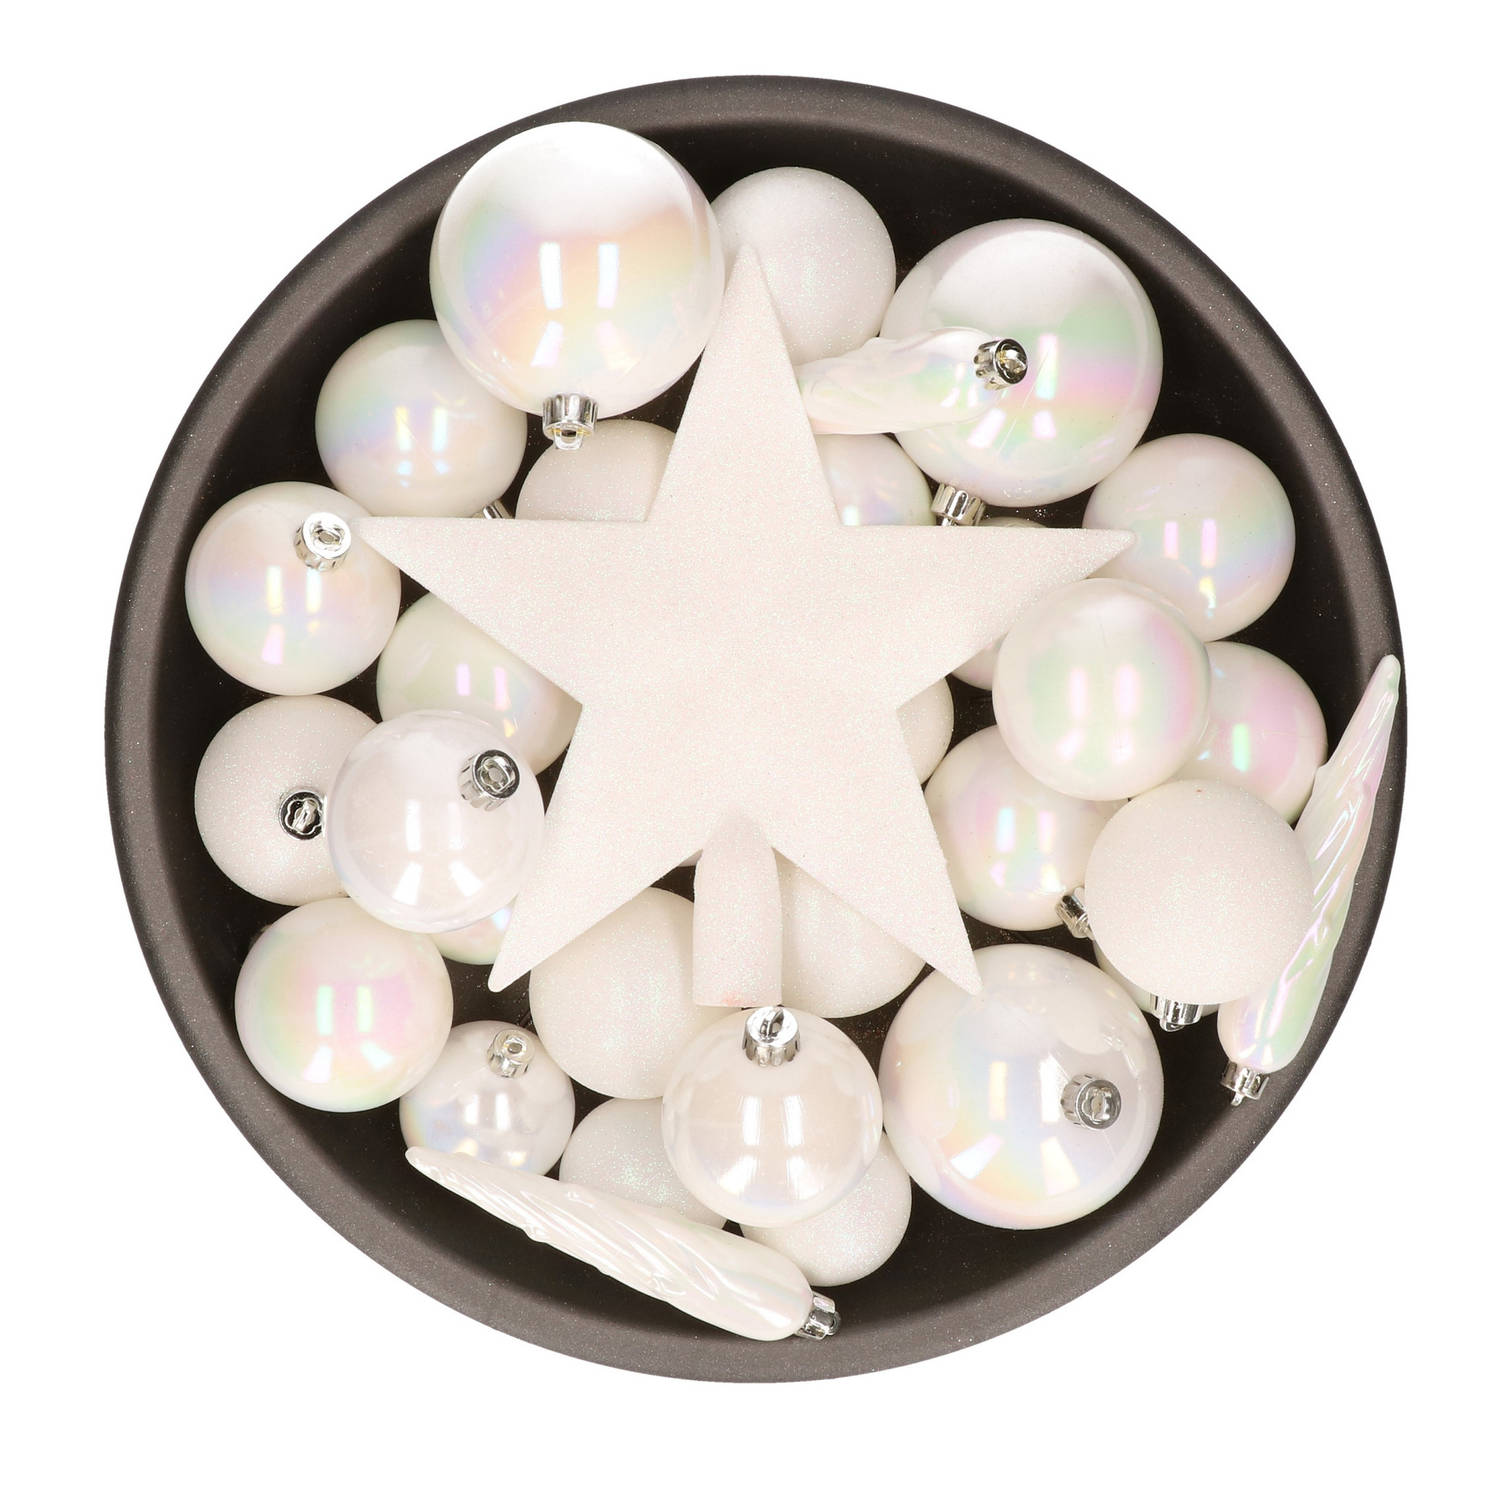 33x stuks kunststof kerstballen met piek 5-6-8 cm parelmoer wit incl. haakjes - Kerstbal